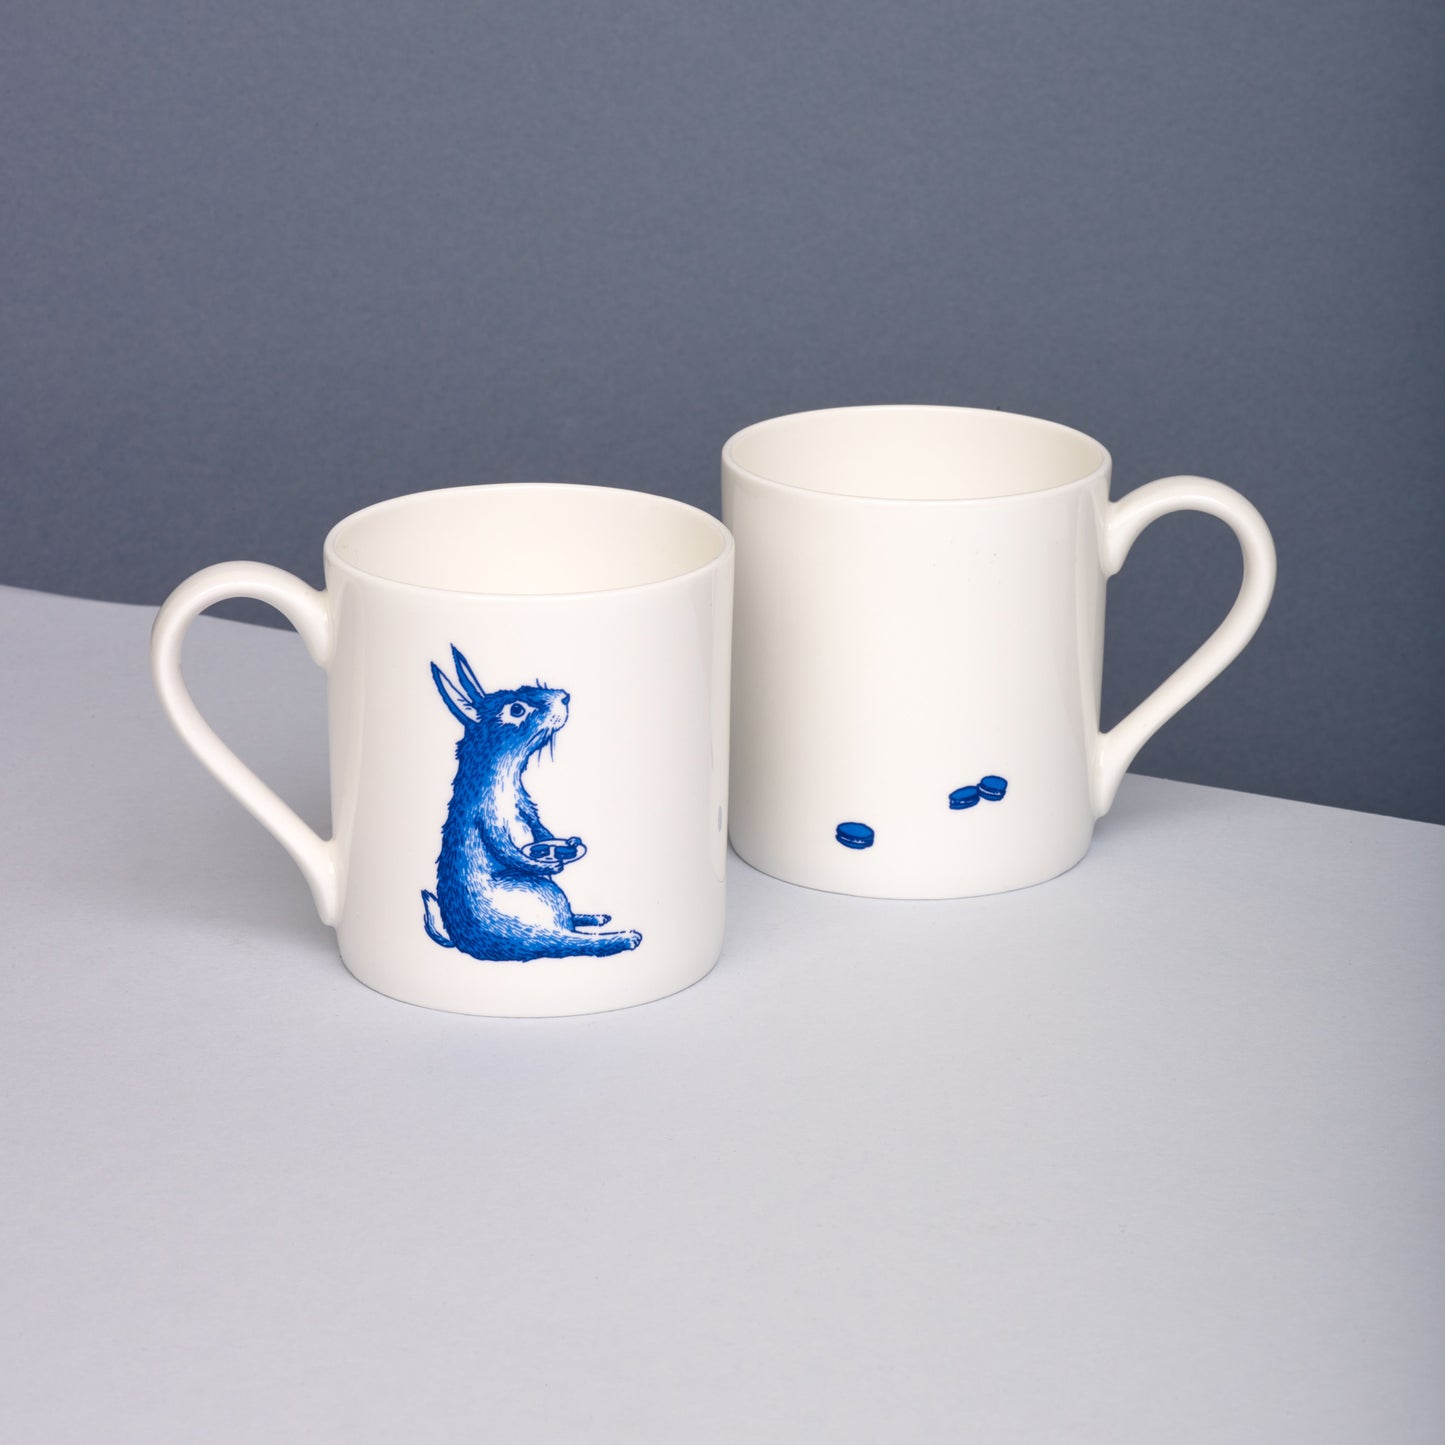 Rabbit Willow pattern mug